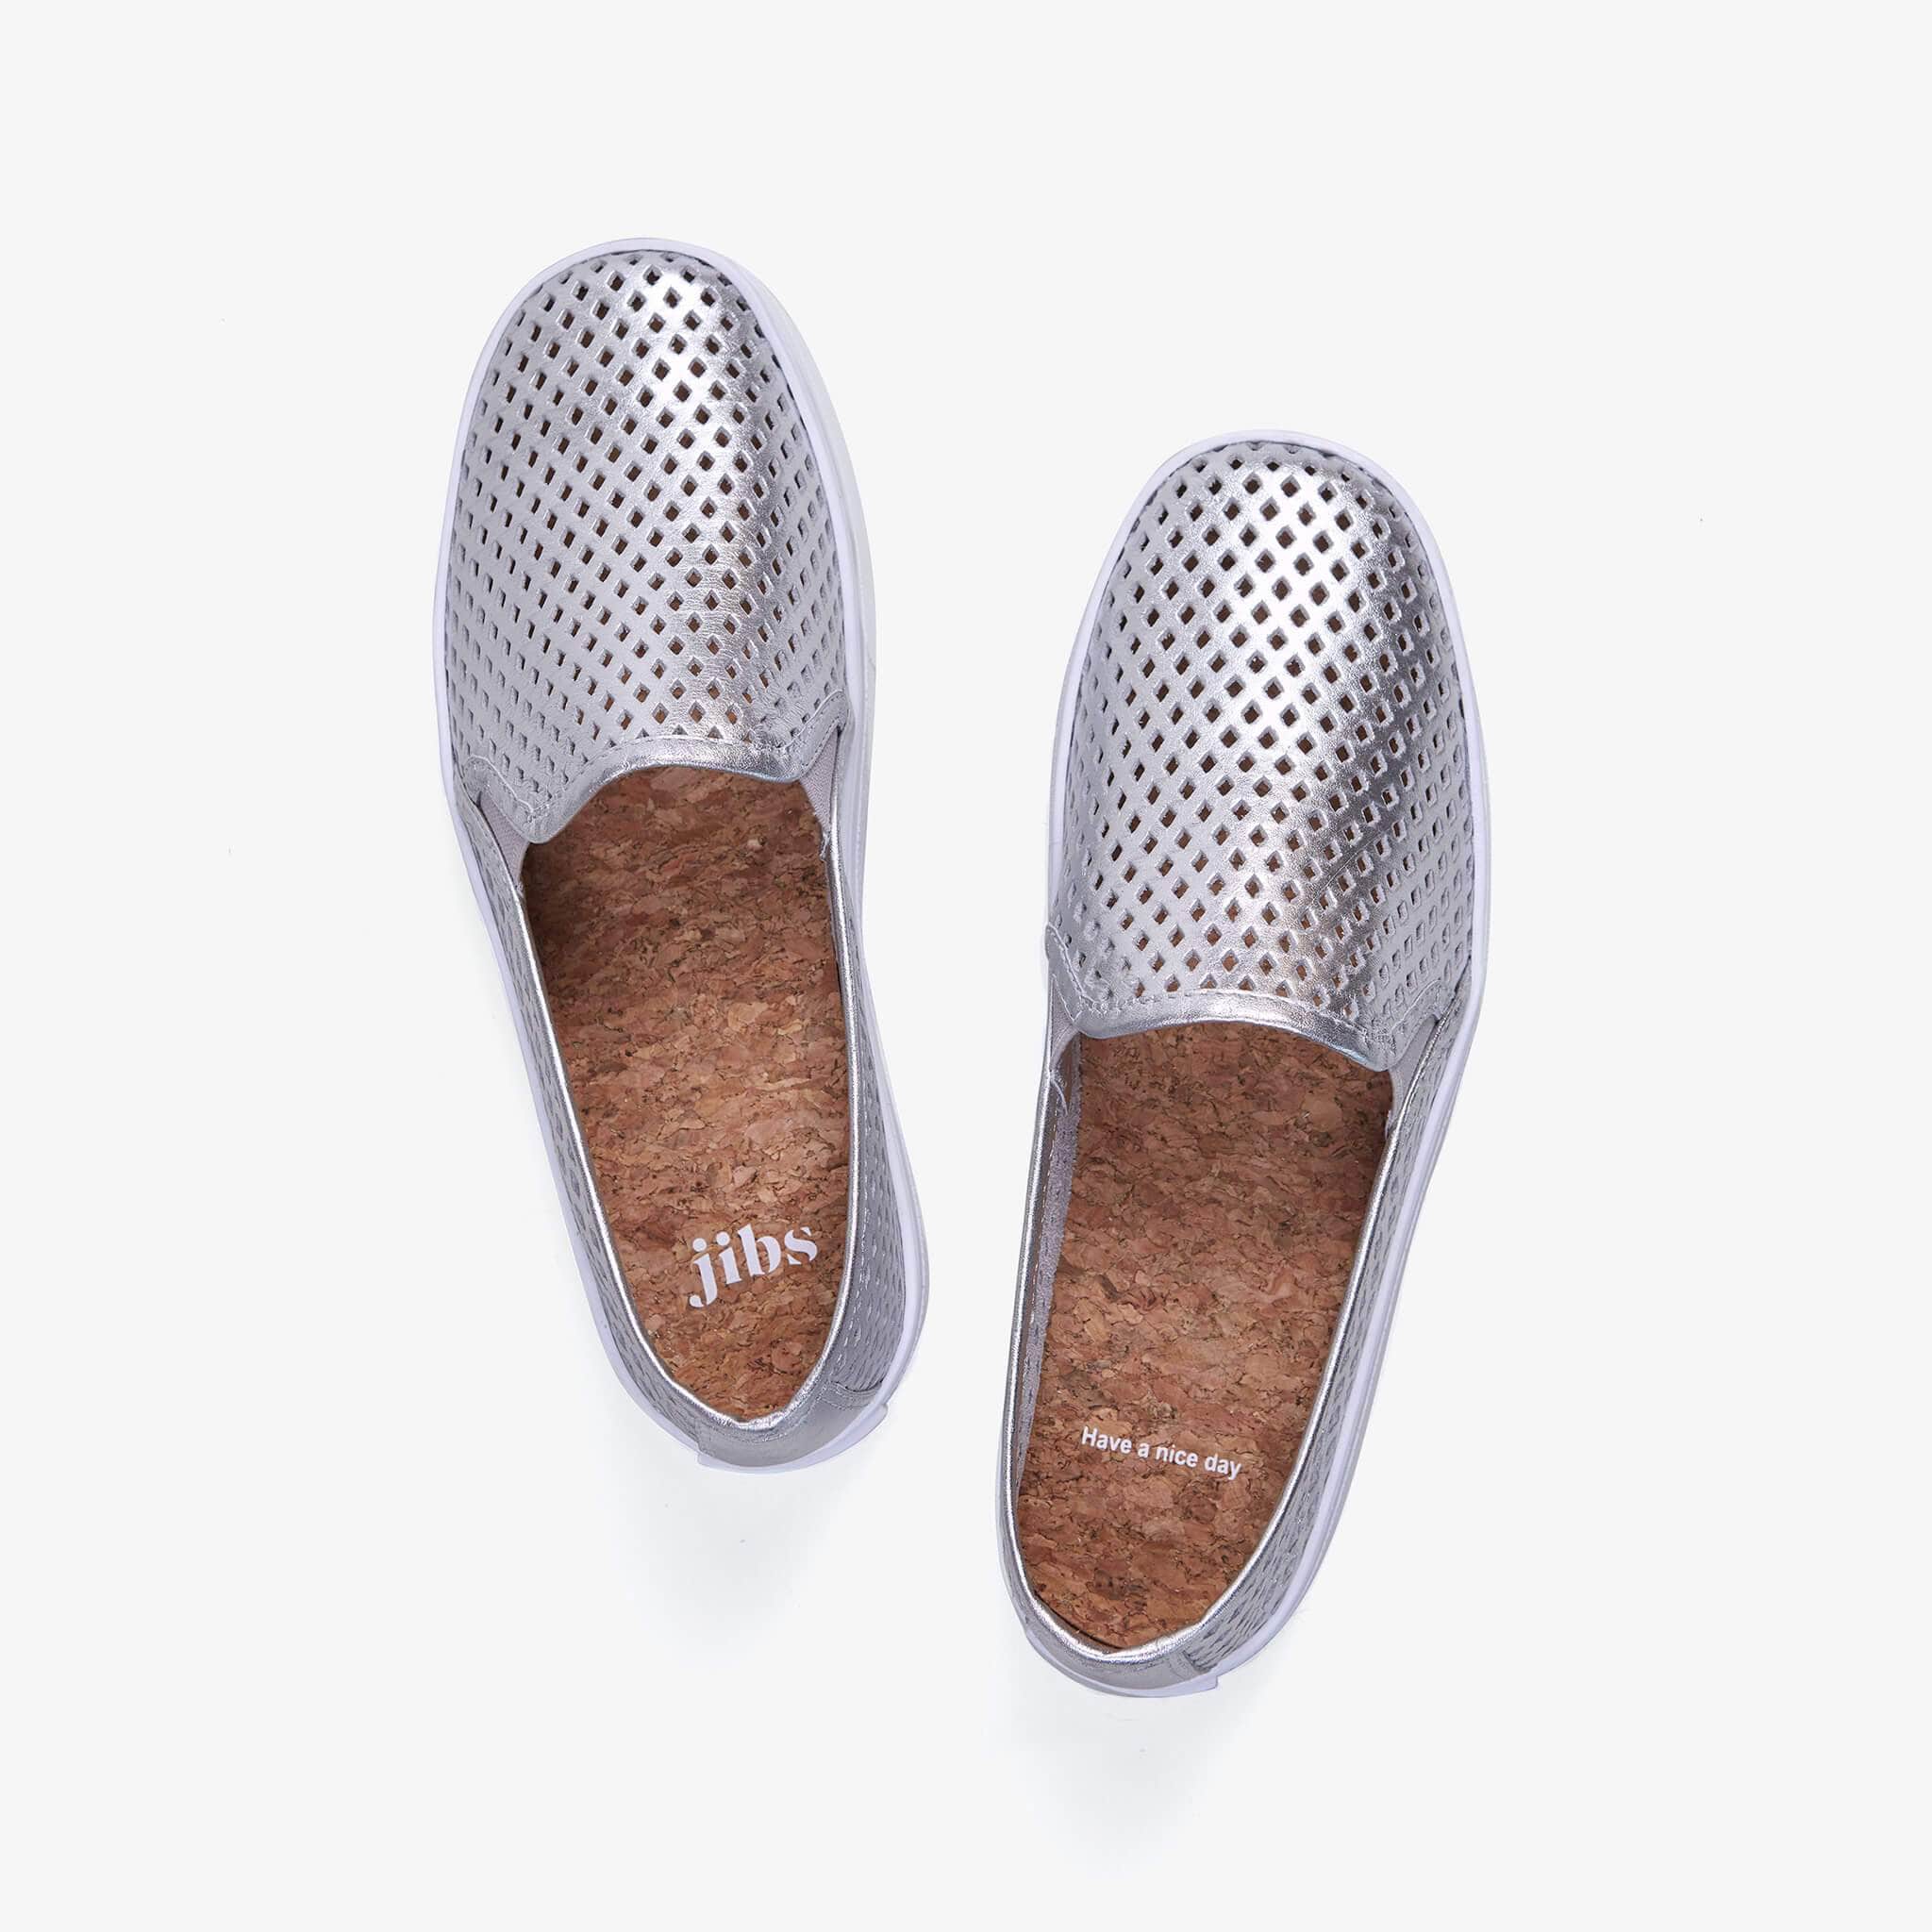 Jibs Classic Silver Slip On Sneaker-Shoe Side